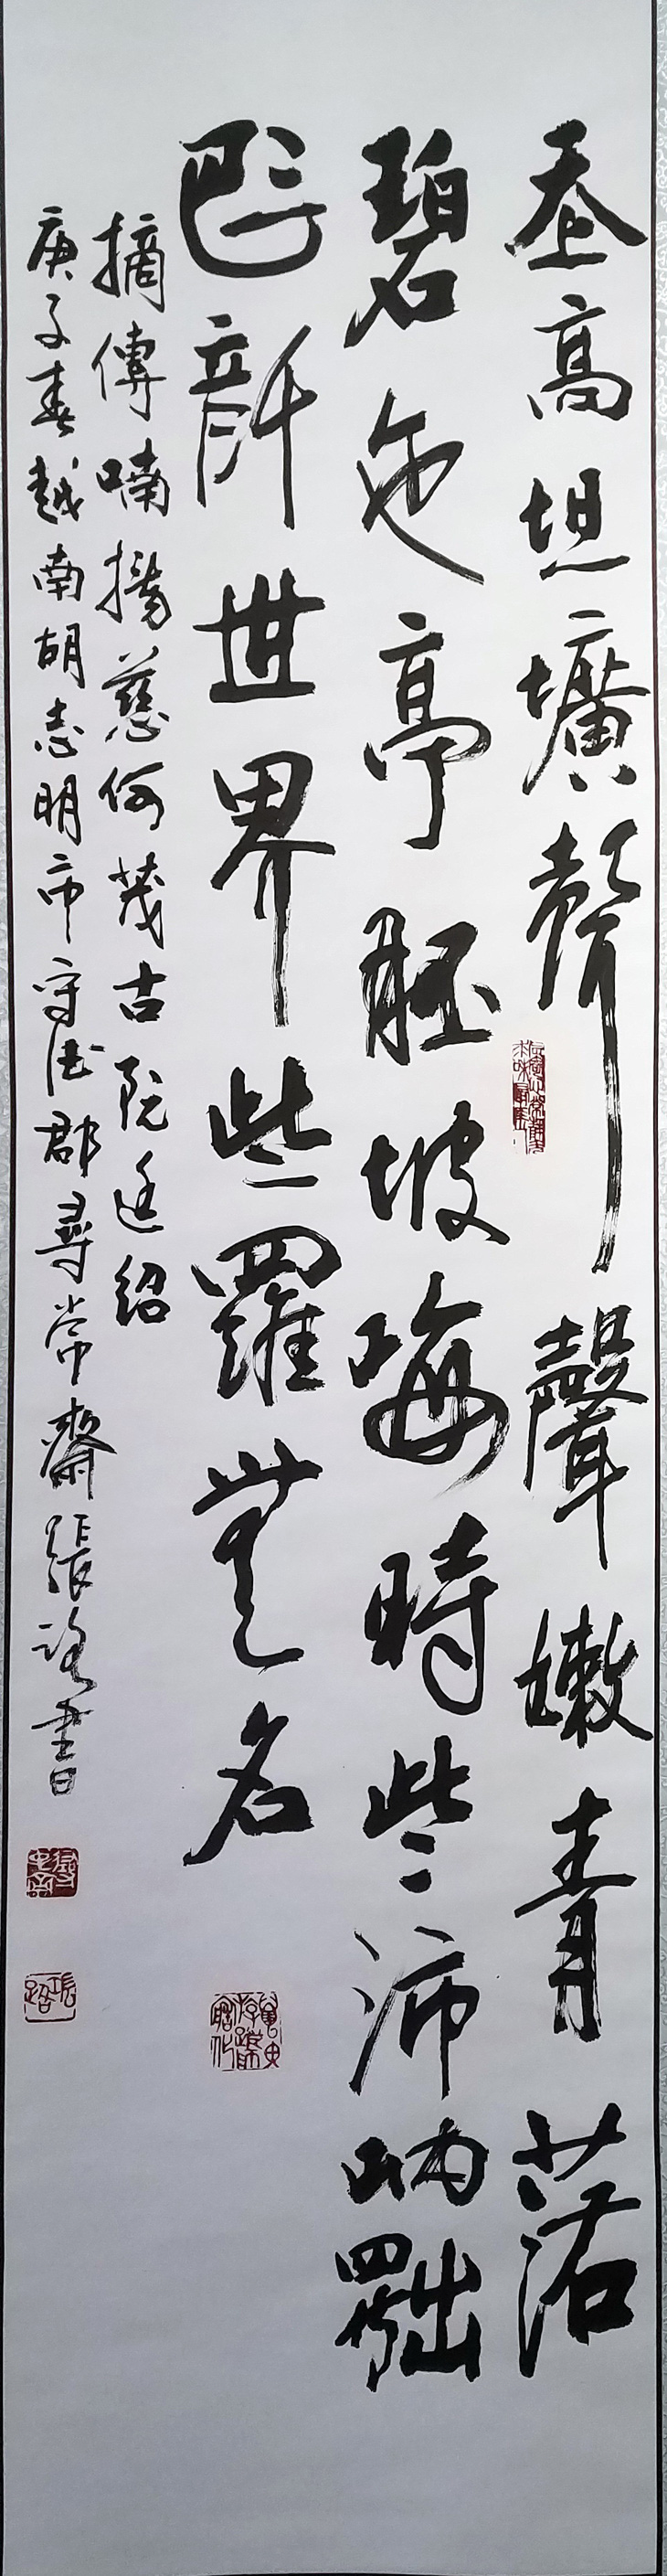 Xem triển lãm thư pháp của Trương Lộ gặp thơ Lê Quý Đôn, Bùi Giáng, Bảo Định Giang - Ảnh 5.